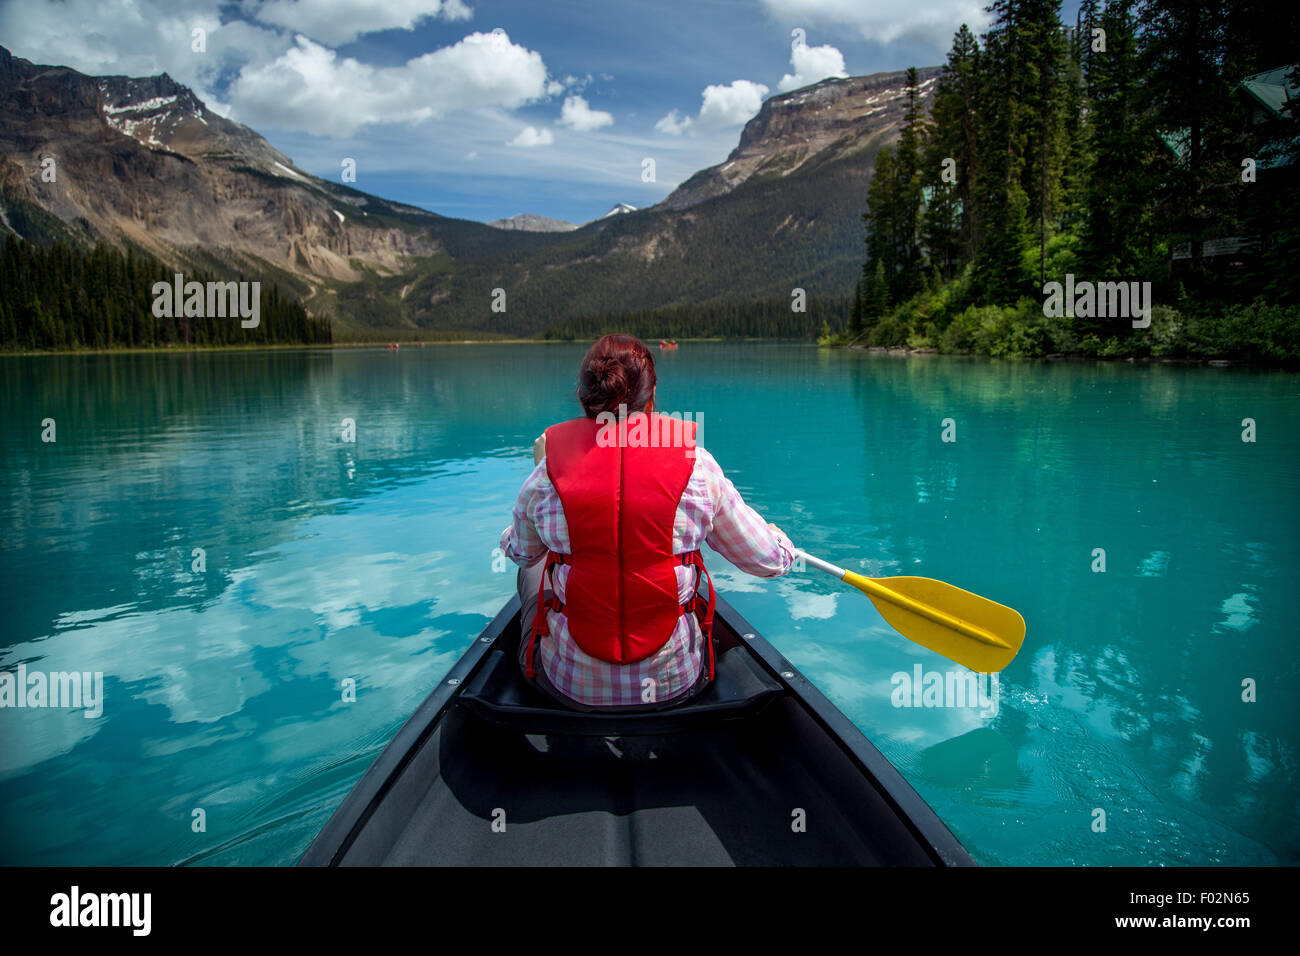 Mujer canotaje en el lago Esmeralda, el Parque Nacional Yoho, British Columbia, Canadá Foto de stock